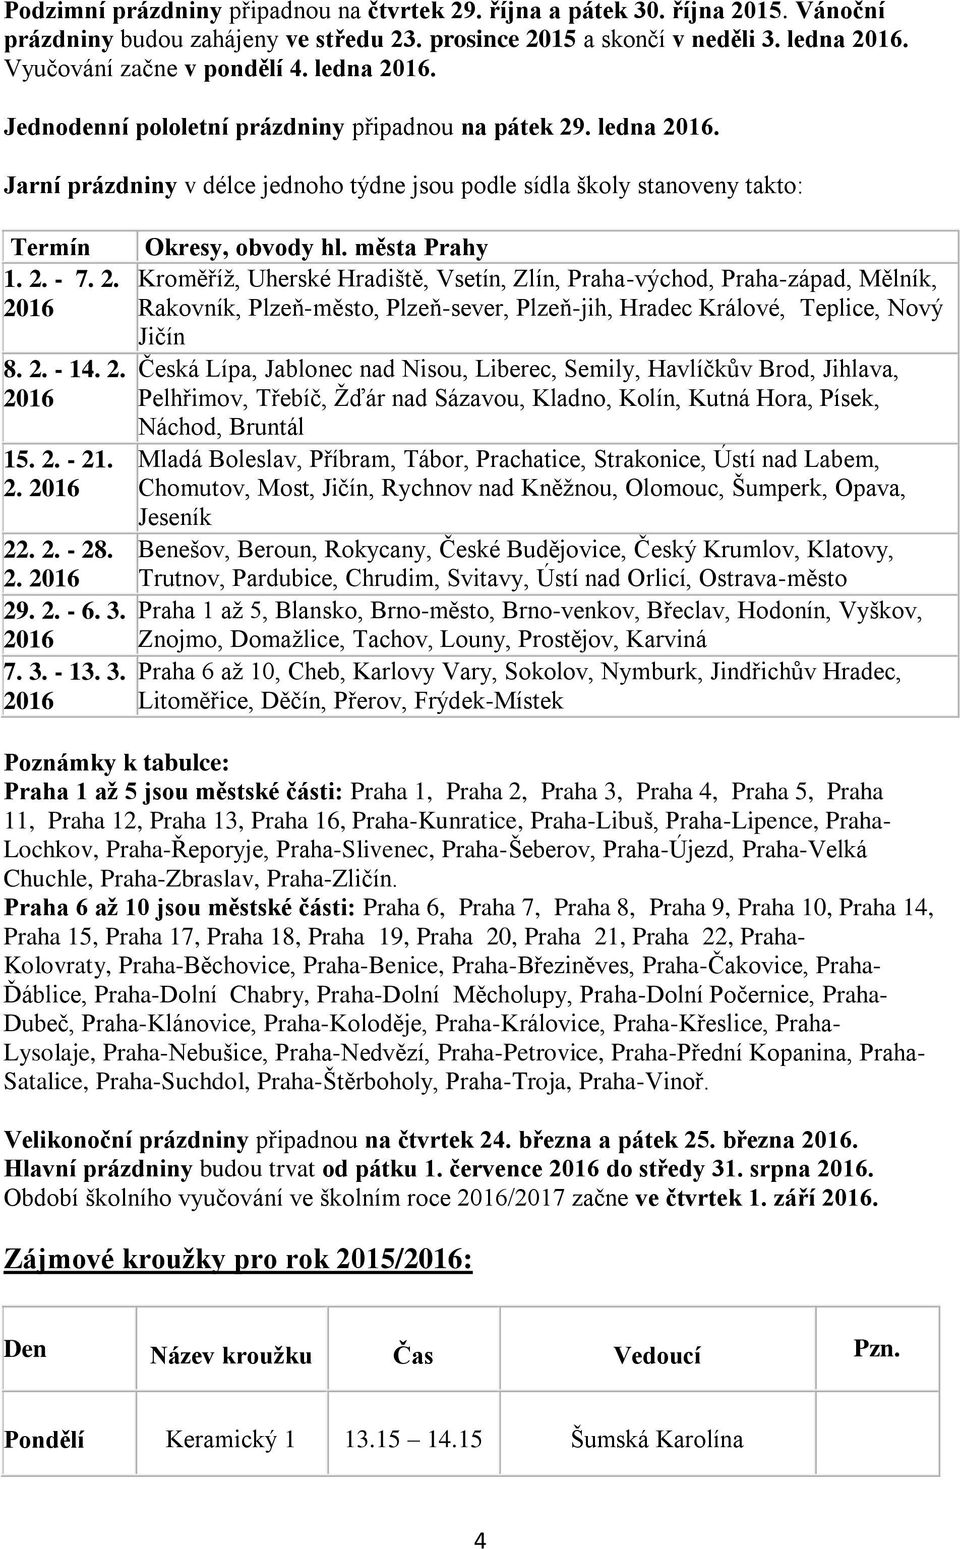 2. Kroměříž, Uherské Hradiště, Vsetín, Zlín, Praha-východ, Praha-západ, Mělník, 20